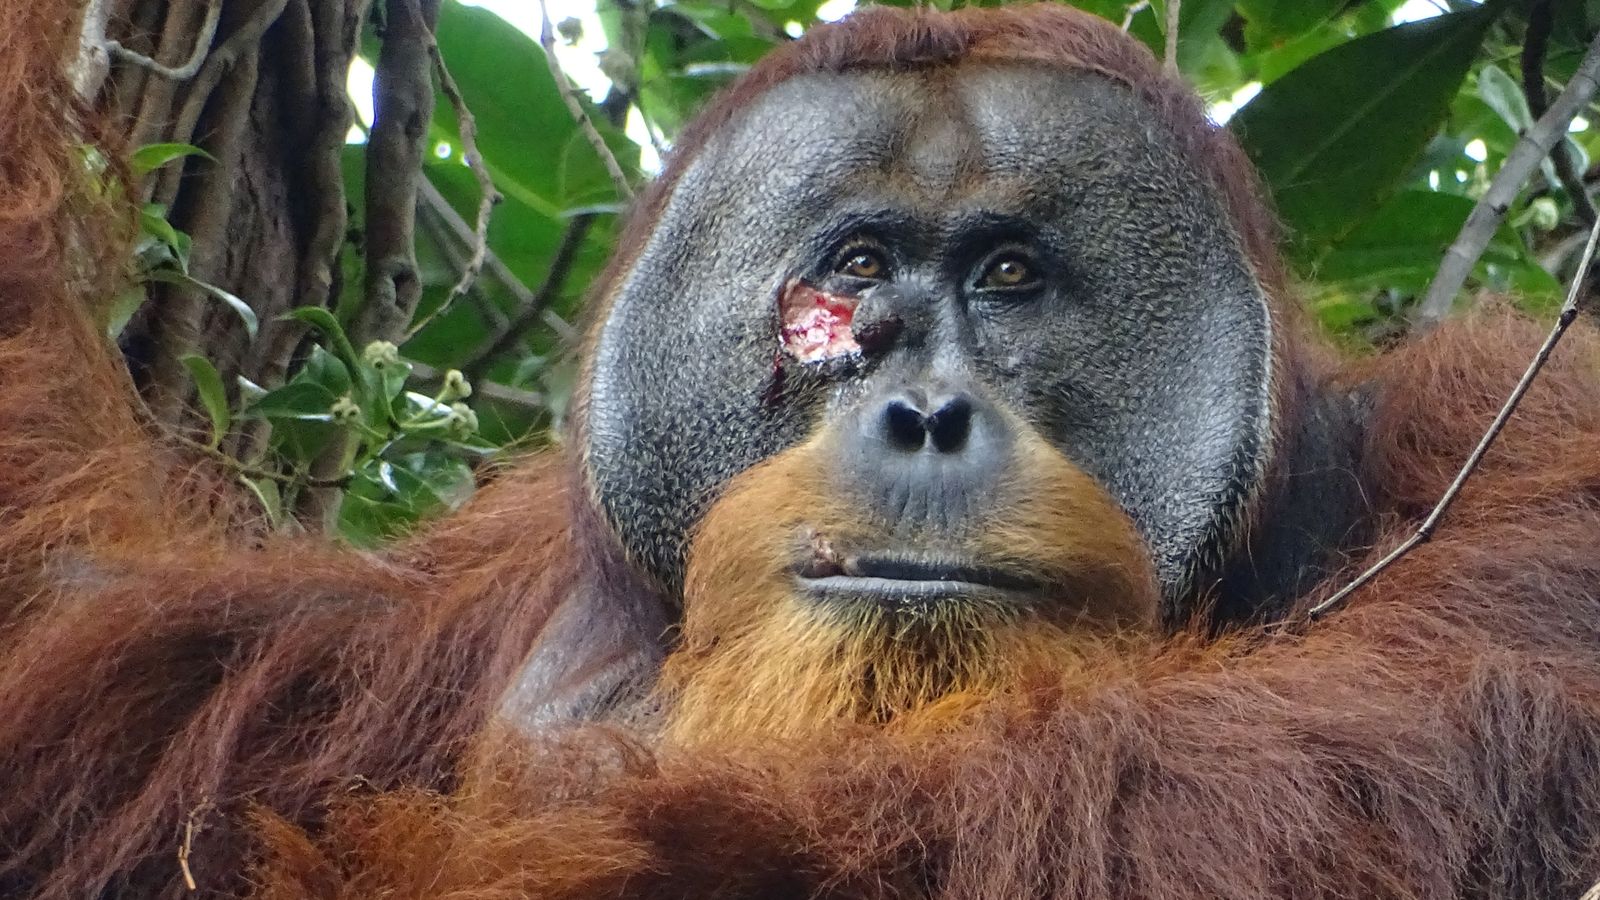 Орангутан, видян да използва лечебно растение за лечение на рани първо при диви животни